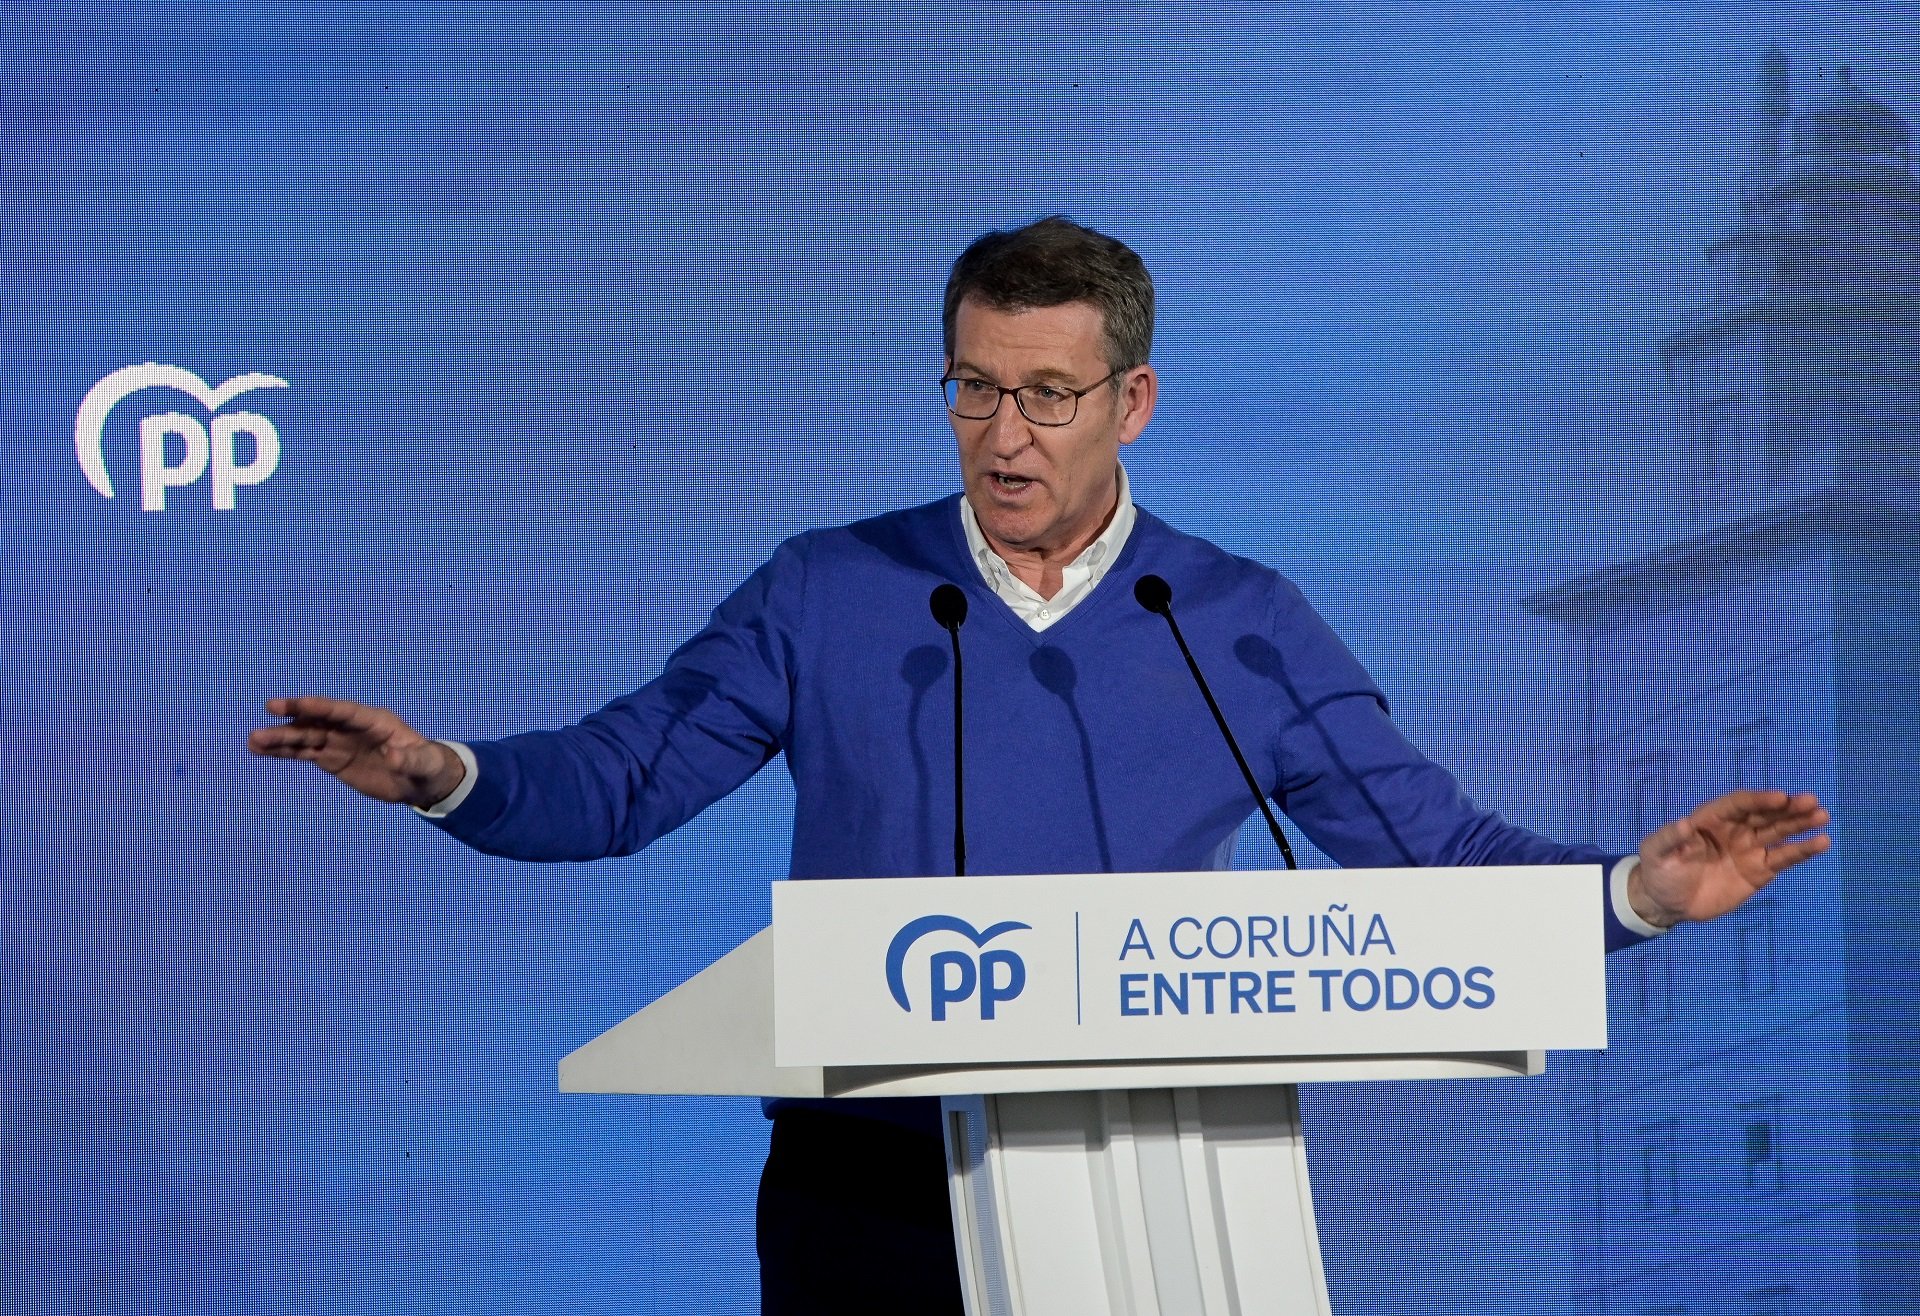 Feijóo demana avançar les eleccions davant la "degeneració" del govern de Pedro Sánchez